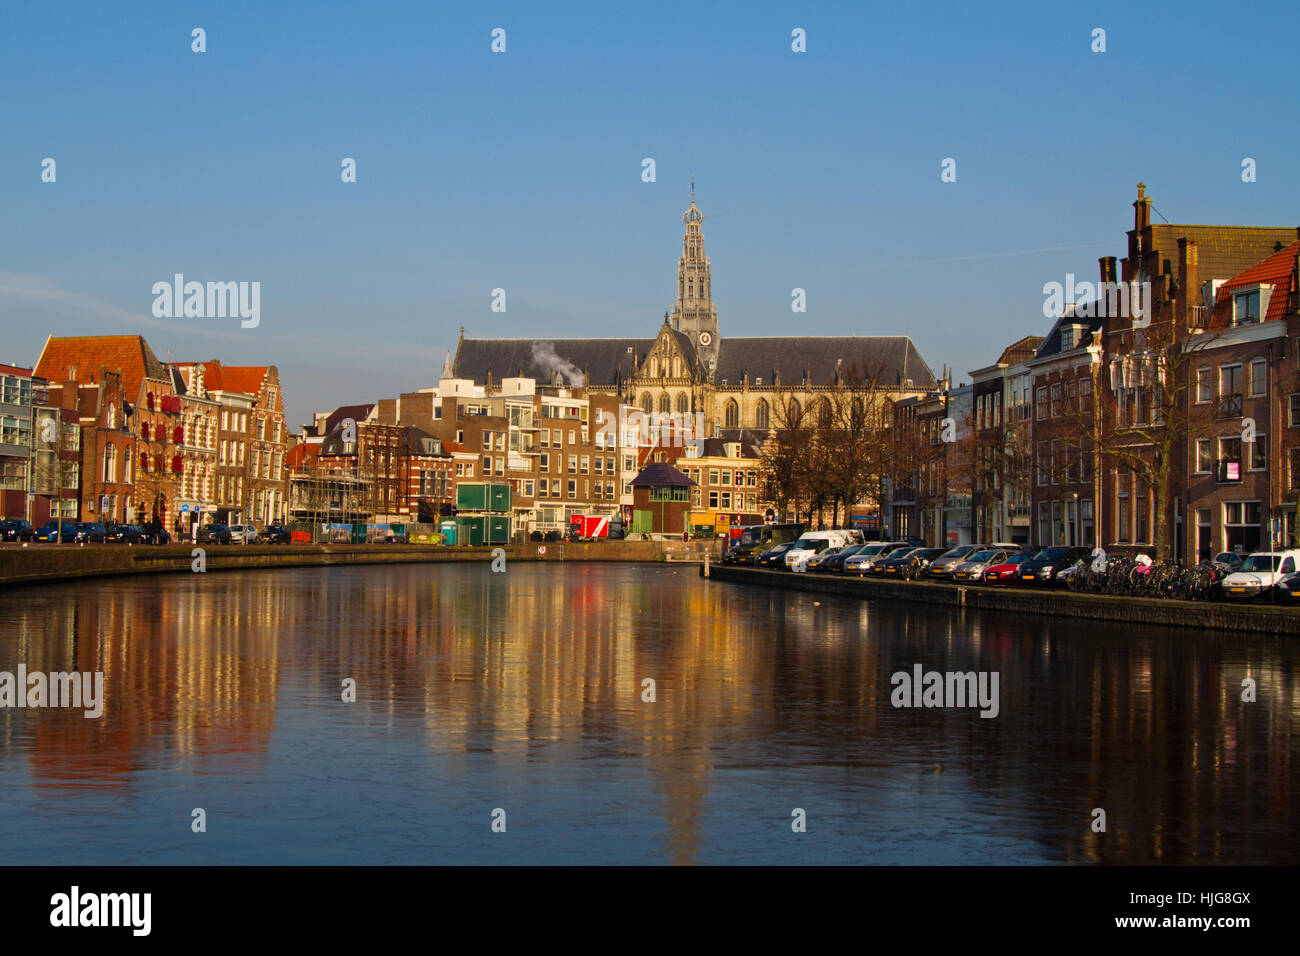 La charmante ville médiévale de Haarlem en Hollande du Nord avec la cathédrale Saint-Bavon, vu de la rivière Spaarne congelé Banque D'Images